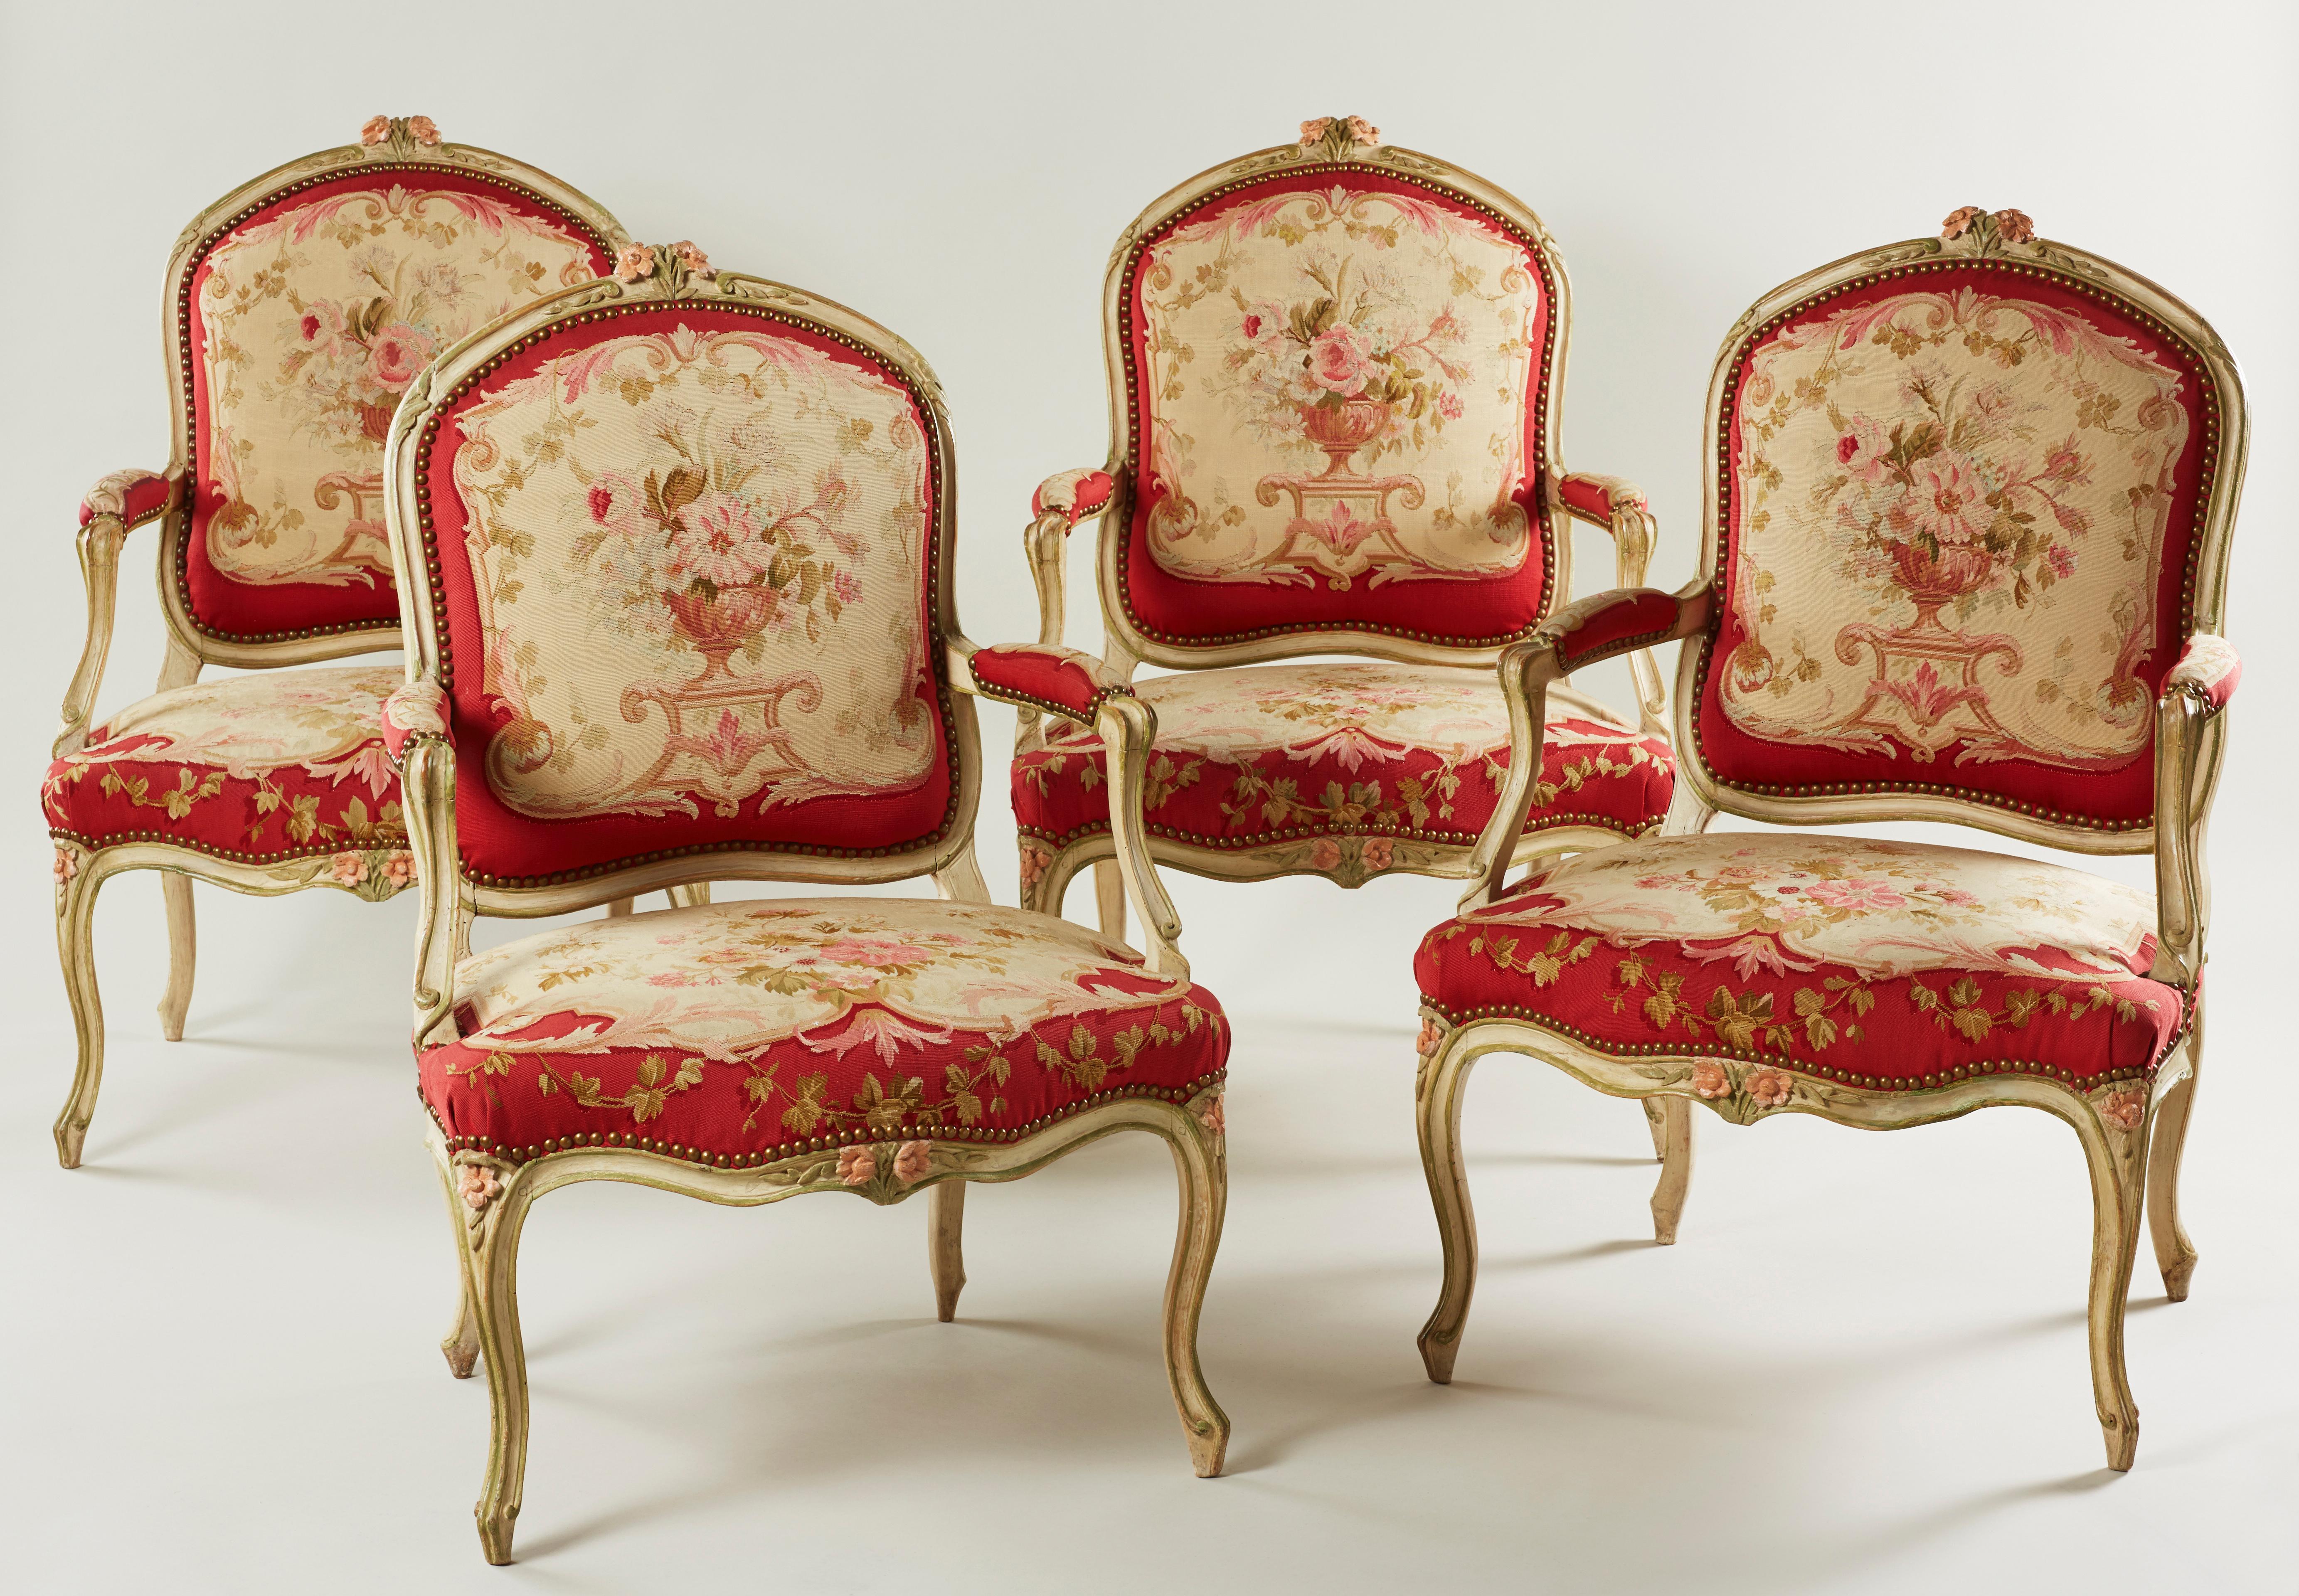 Ein seltener und attraktiver Satz von vier blassgrünen und rosafarbenen Sesseln aus der Zeit Louis XV. Jedes mit einer blumenkopf- und blattgeschnitzten oberen Schiene, gepolsterten und verschnörkelten Armen und einem Serpentinen-Sitz, gepolstert